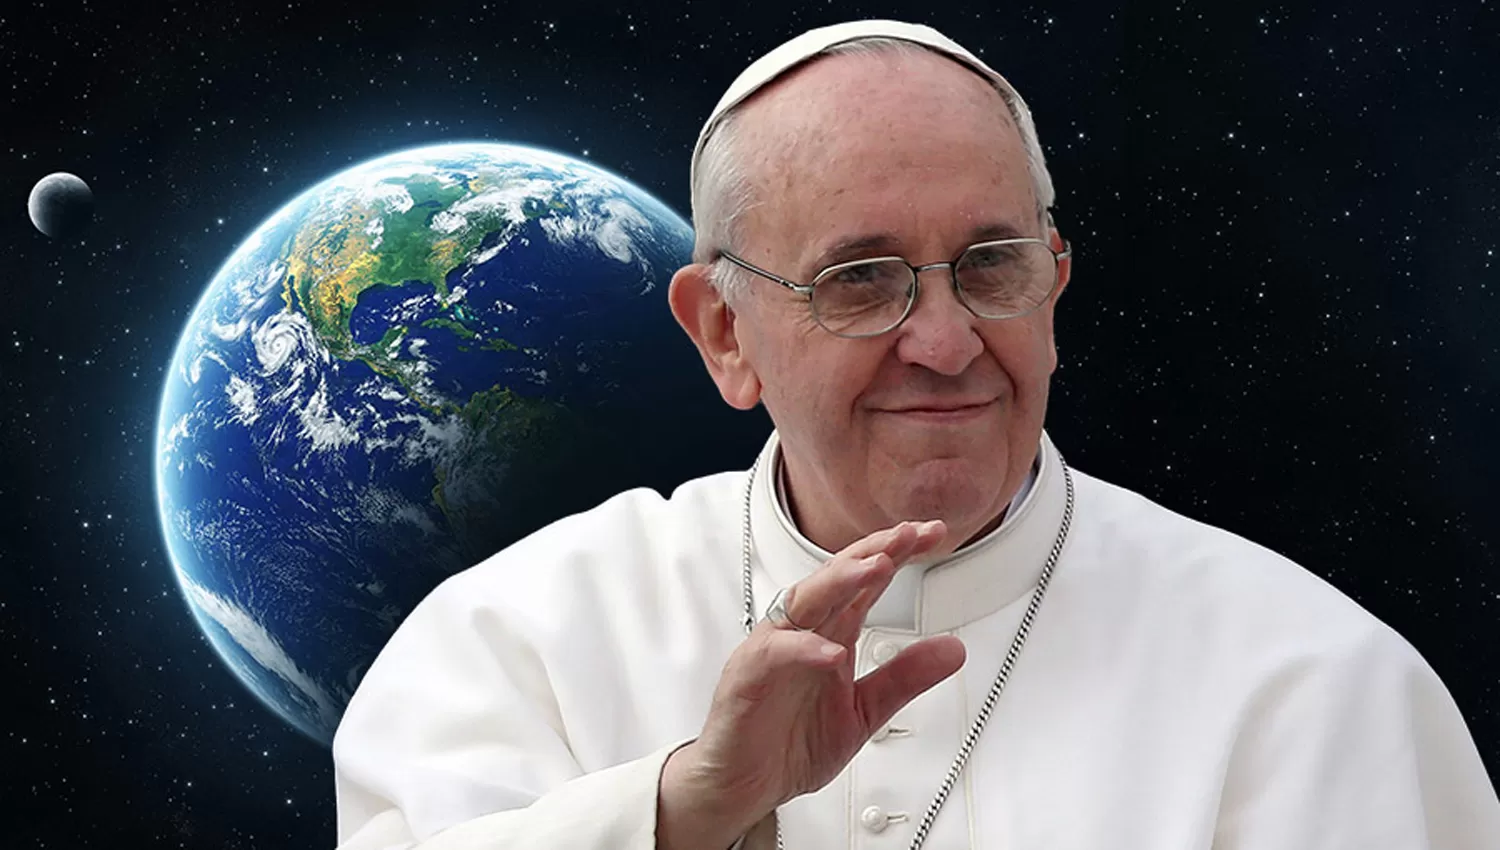 Una ONG ofreció al Papa un millón de dólares si él no come carne durante la Cuaresma